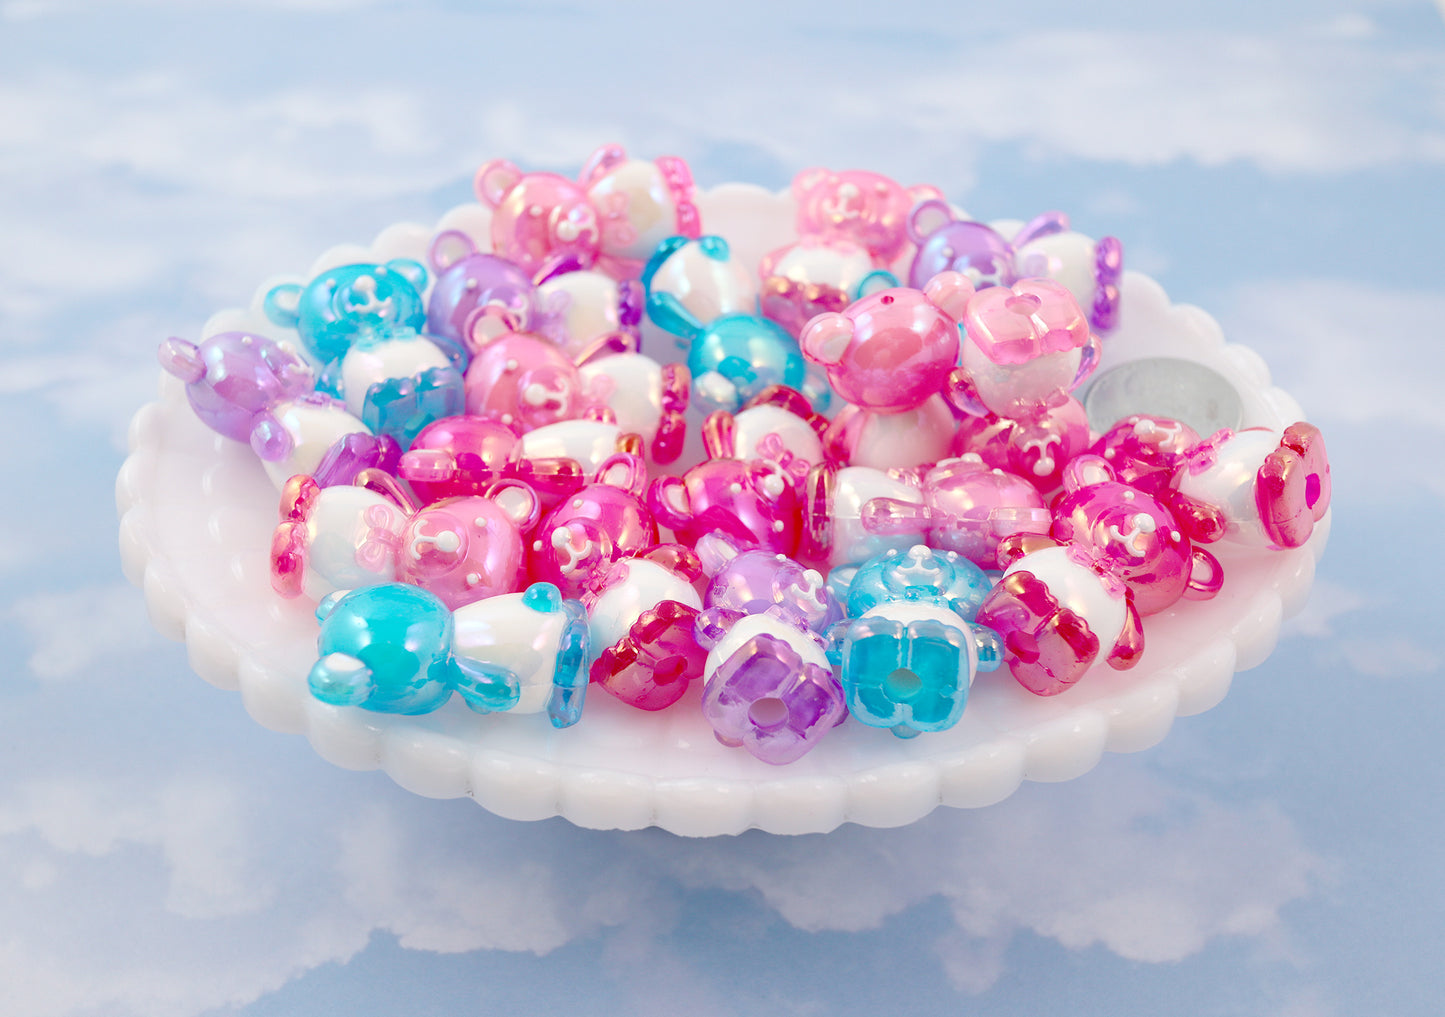 Cute Beads - 28mm Cute AB Teddy Bear Bead Chunky Acrylic or Plastic Beads - 8 pc set